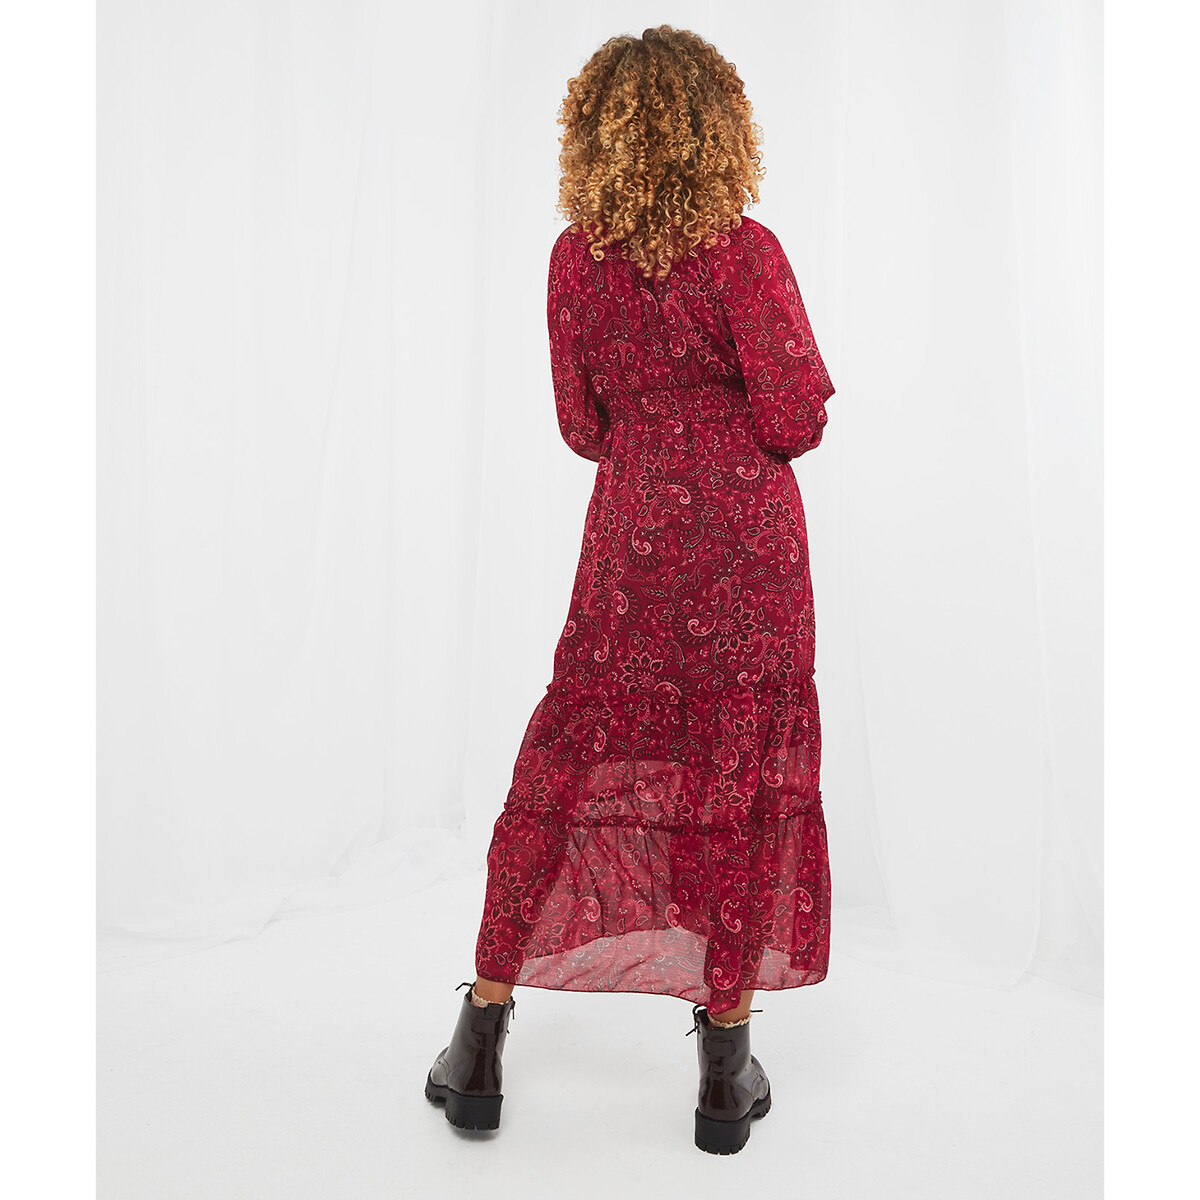 Платье JOE BROWNS Платье Из вуали пояс со сборками принт пейсли 48 розовый, размер 48 - фото 3